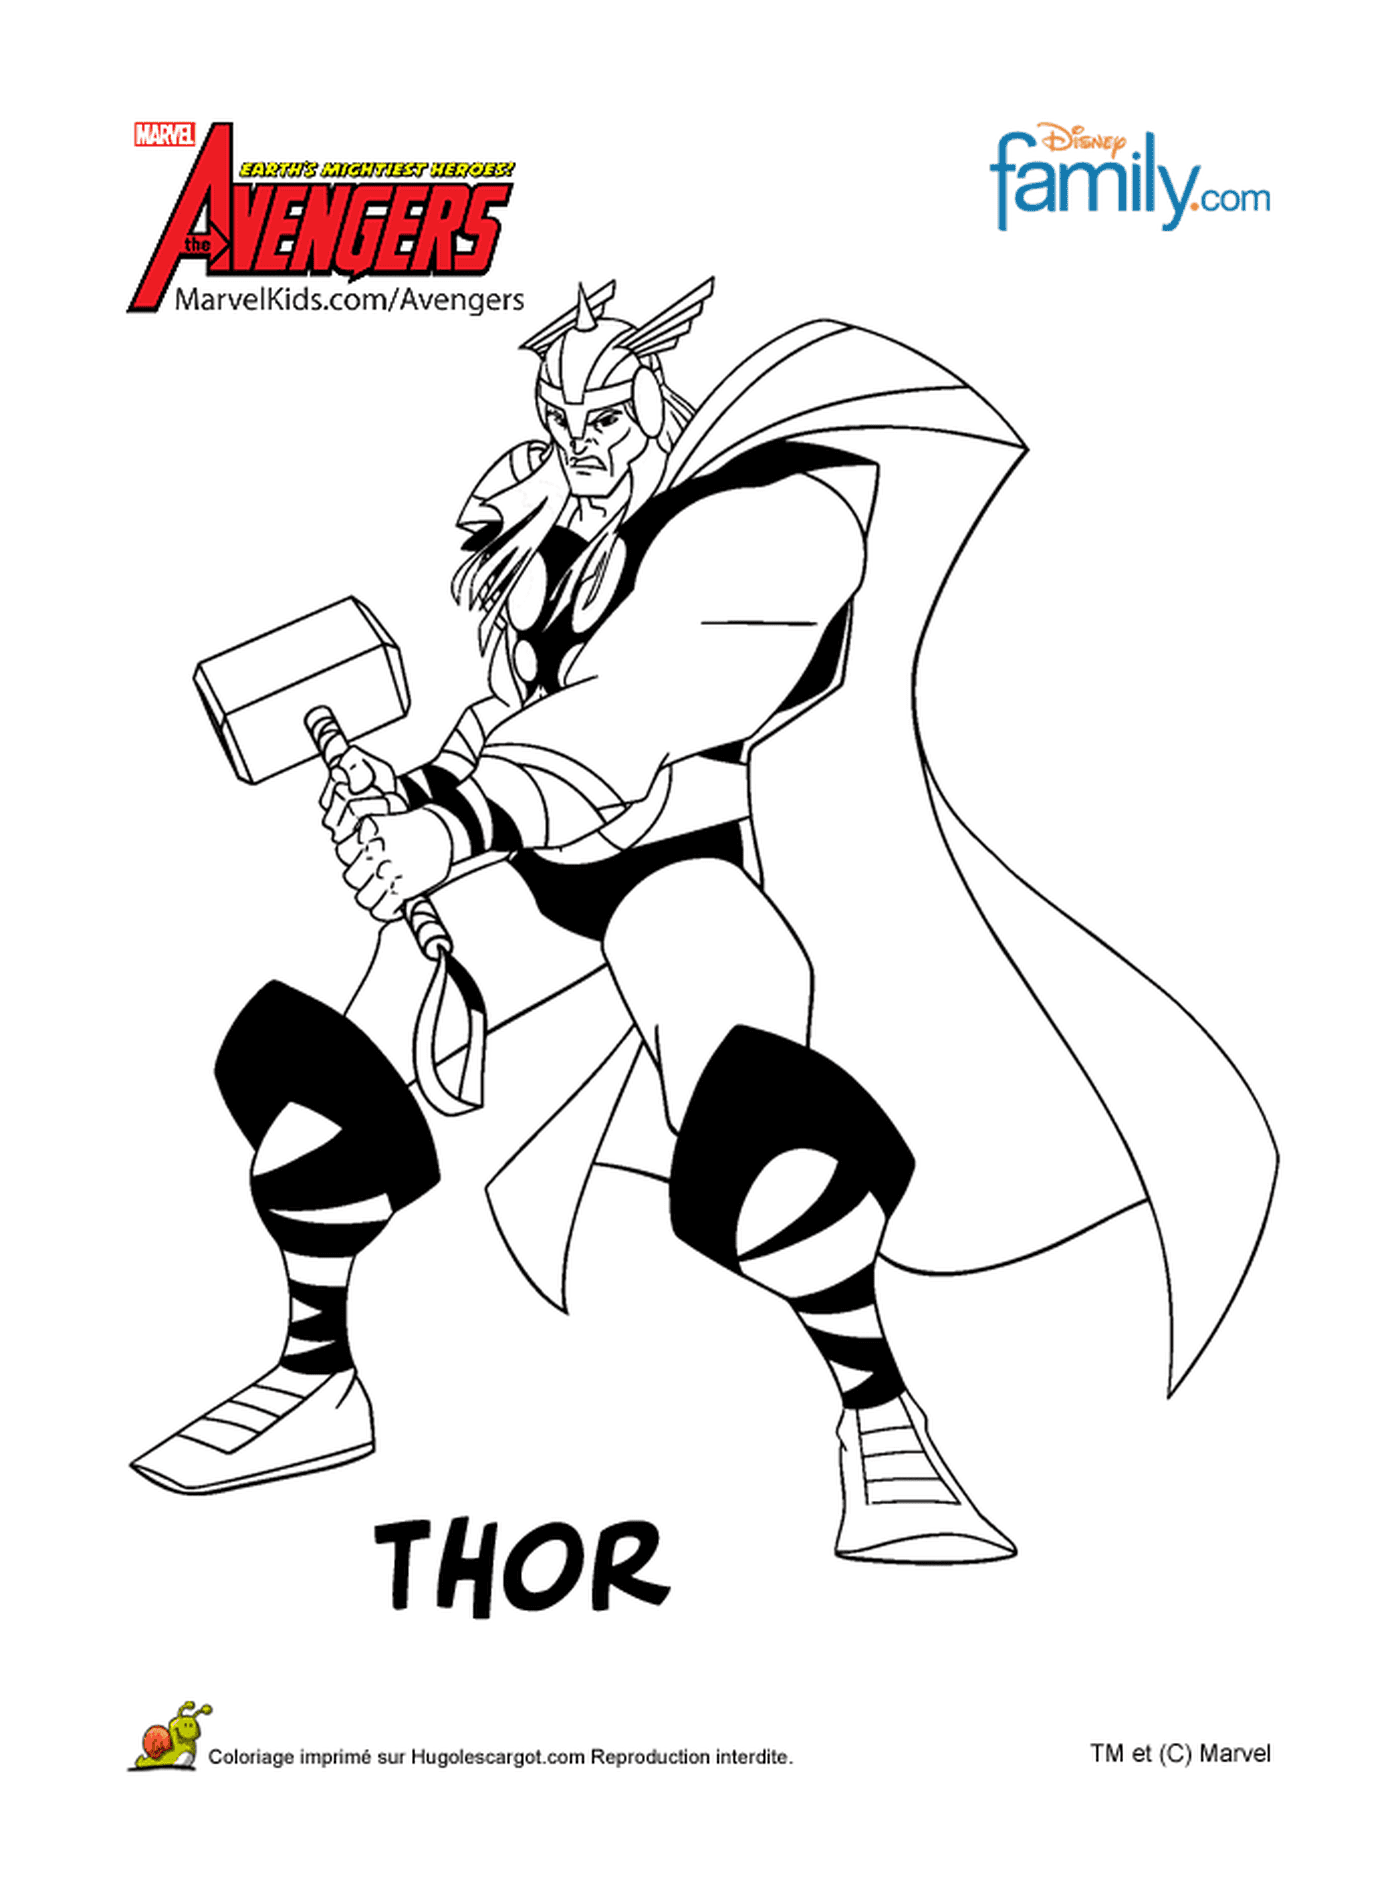  Thor segurando um martelo 